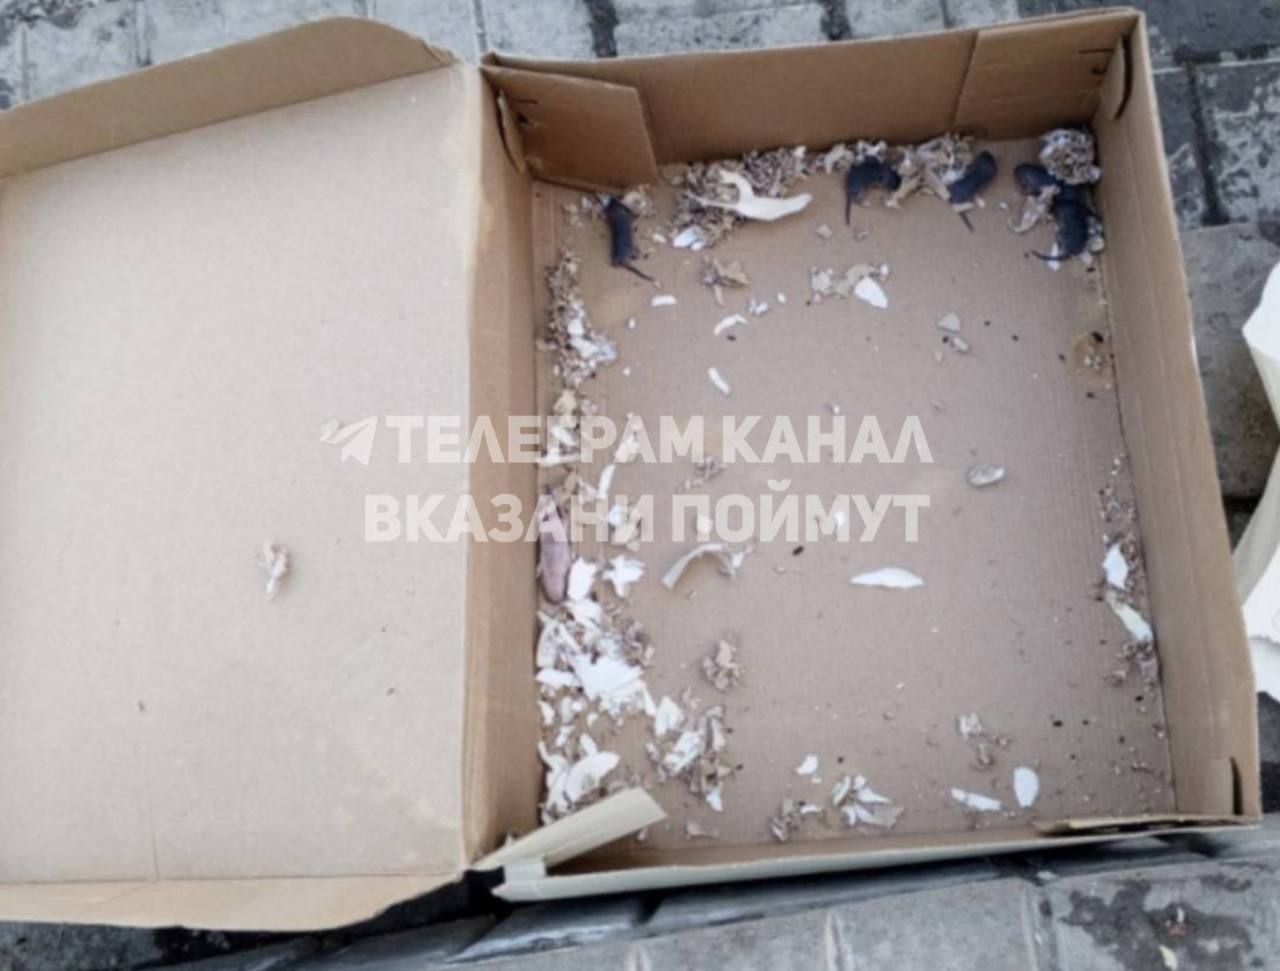 «Купила обувь, в подарок еще и мясо»: в Татарстане покупательница получила мышей в коробке с обувью